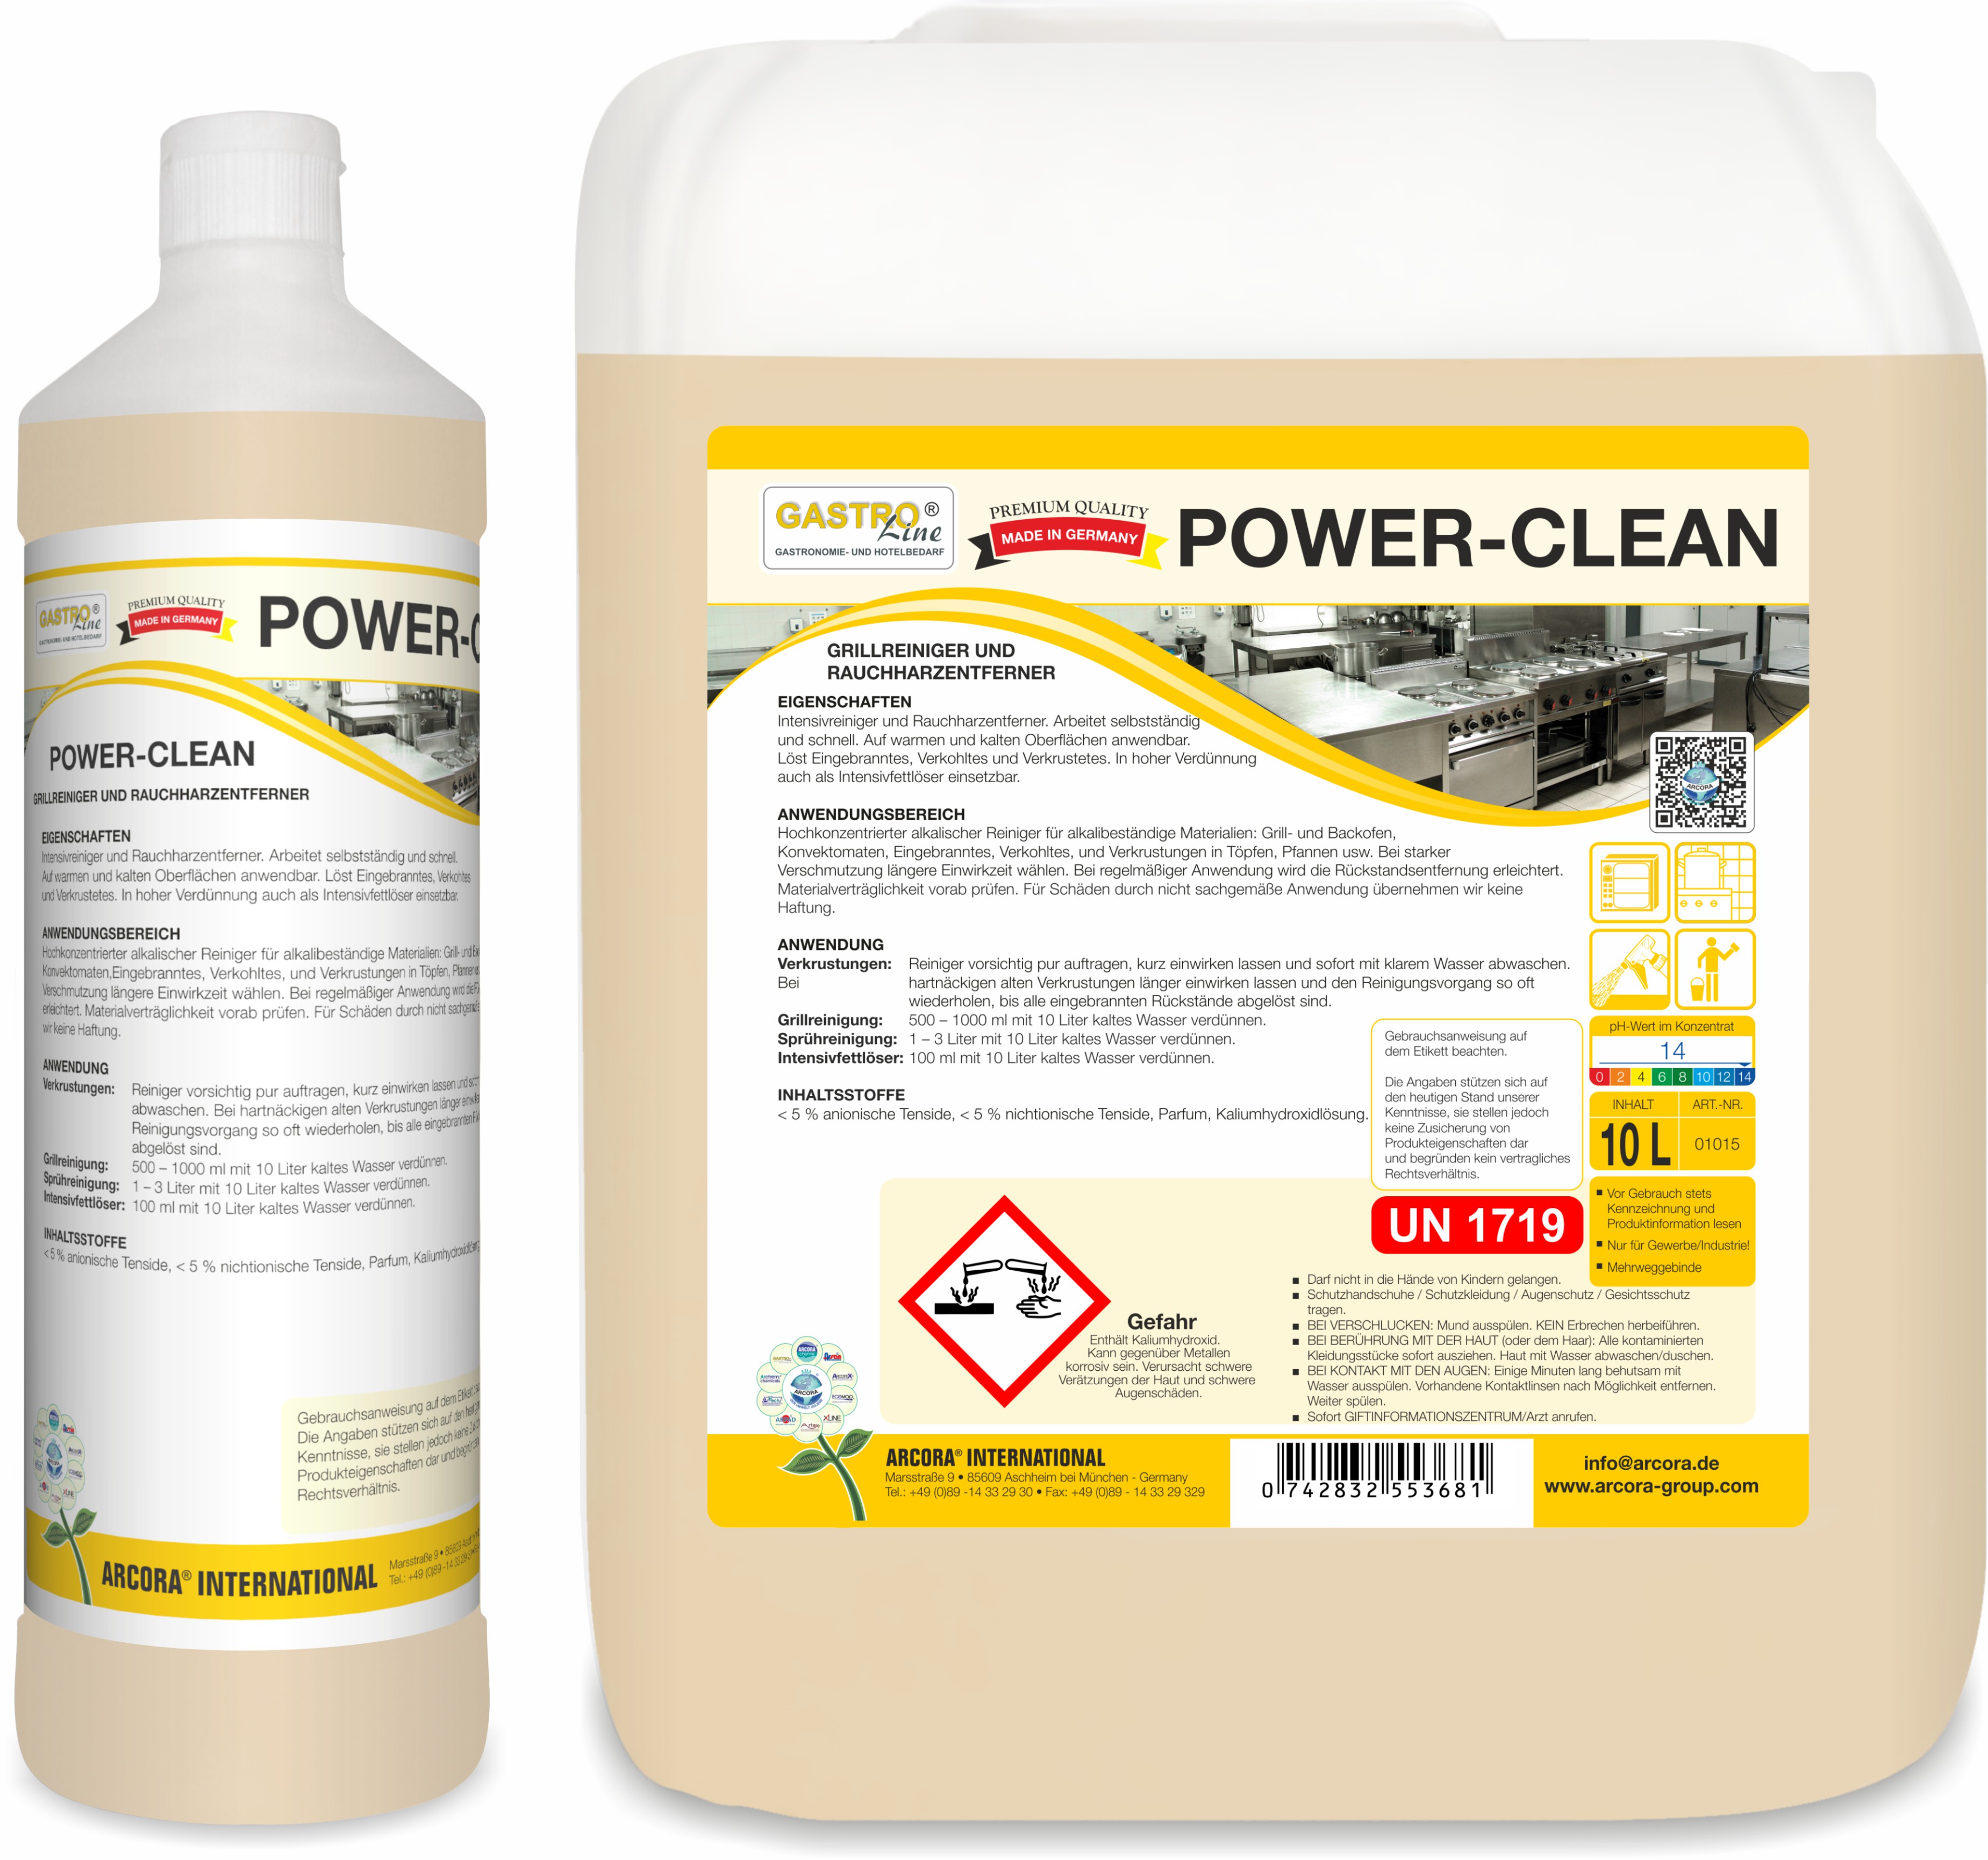 Power-Clean | Grillreiniger & Rauchharzentferner | 1 Liter Flasche